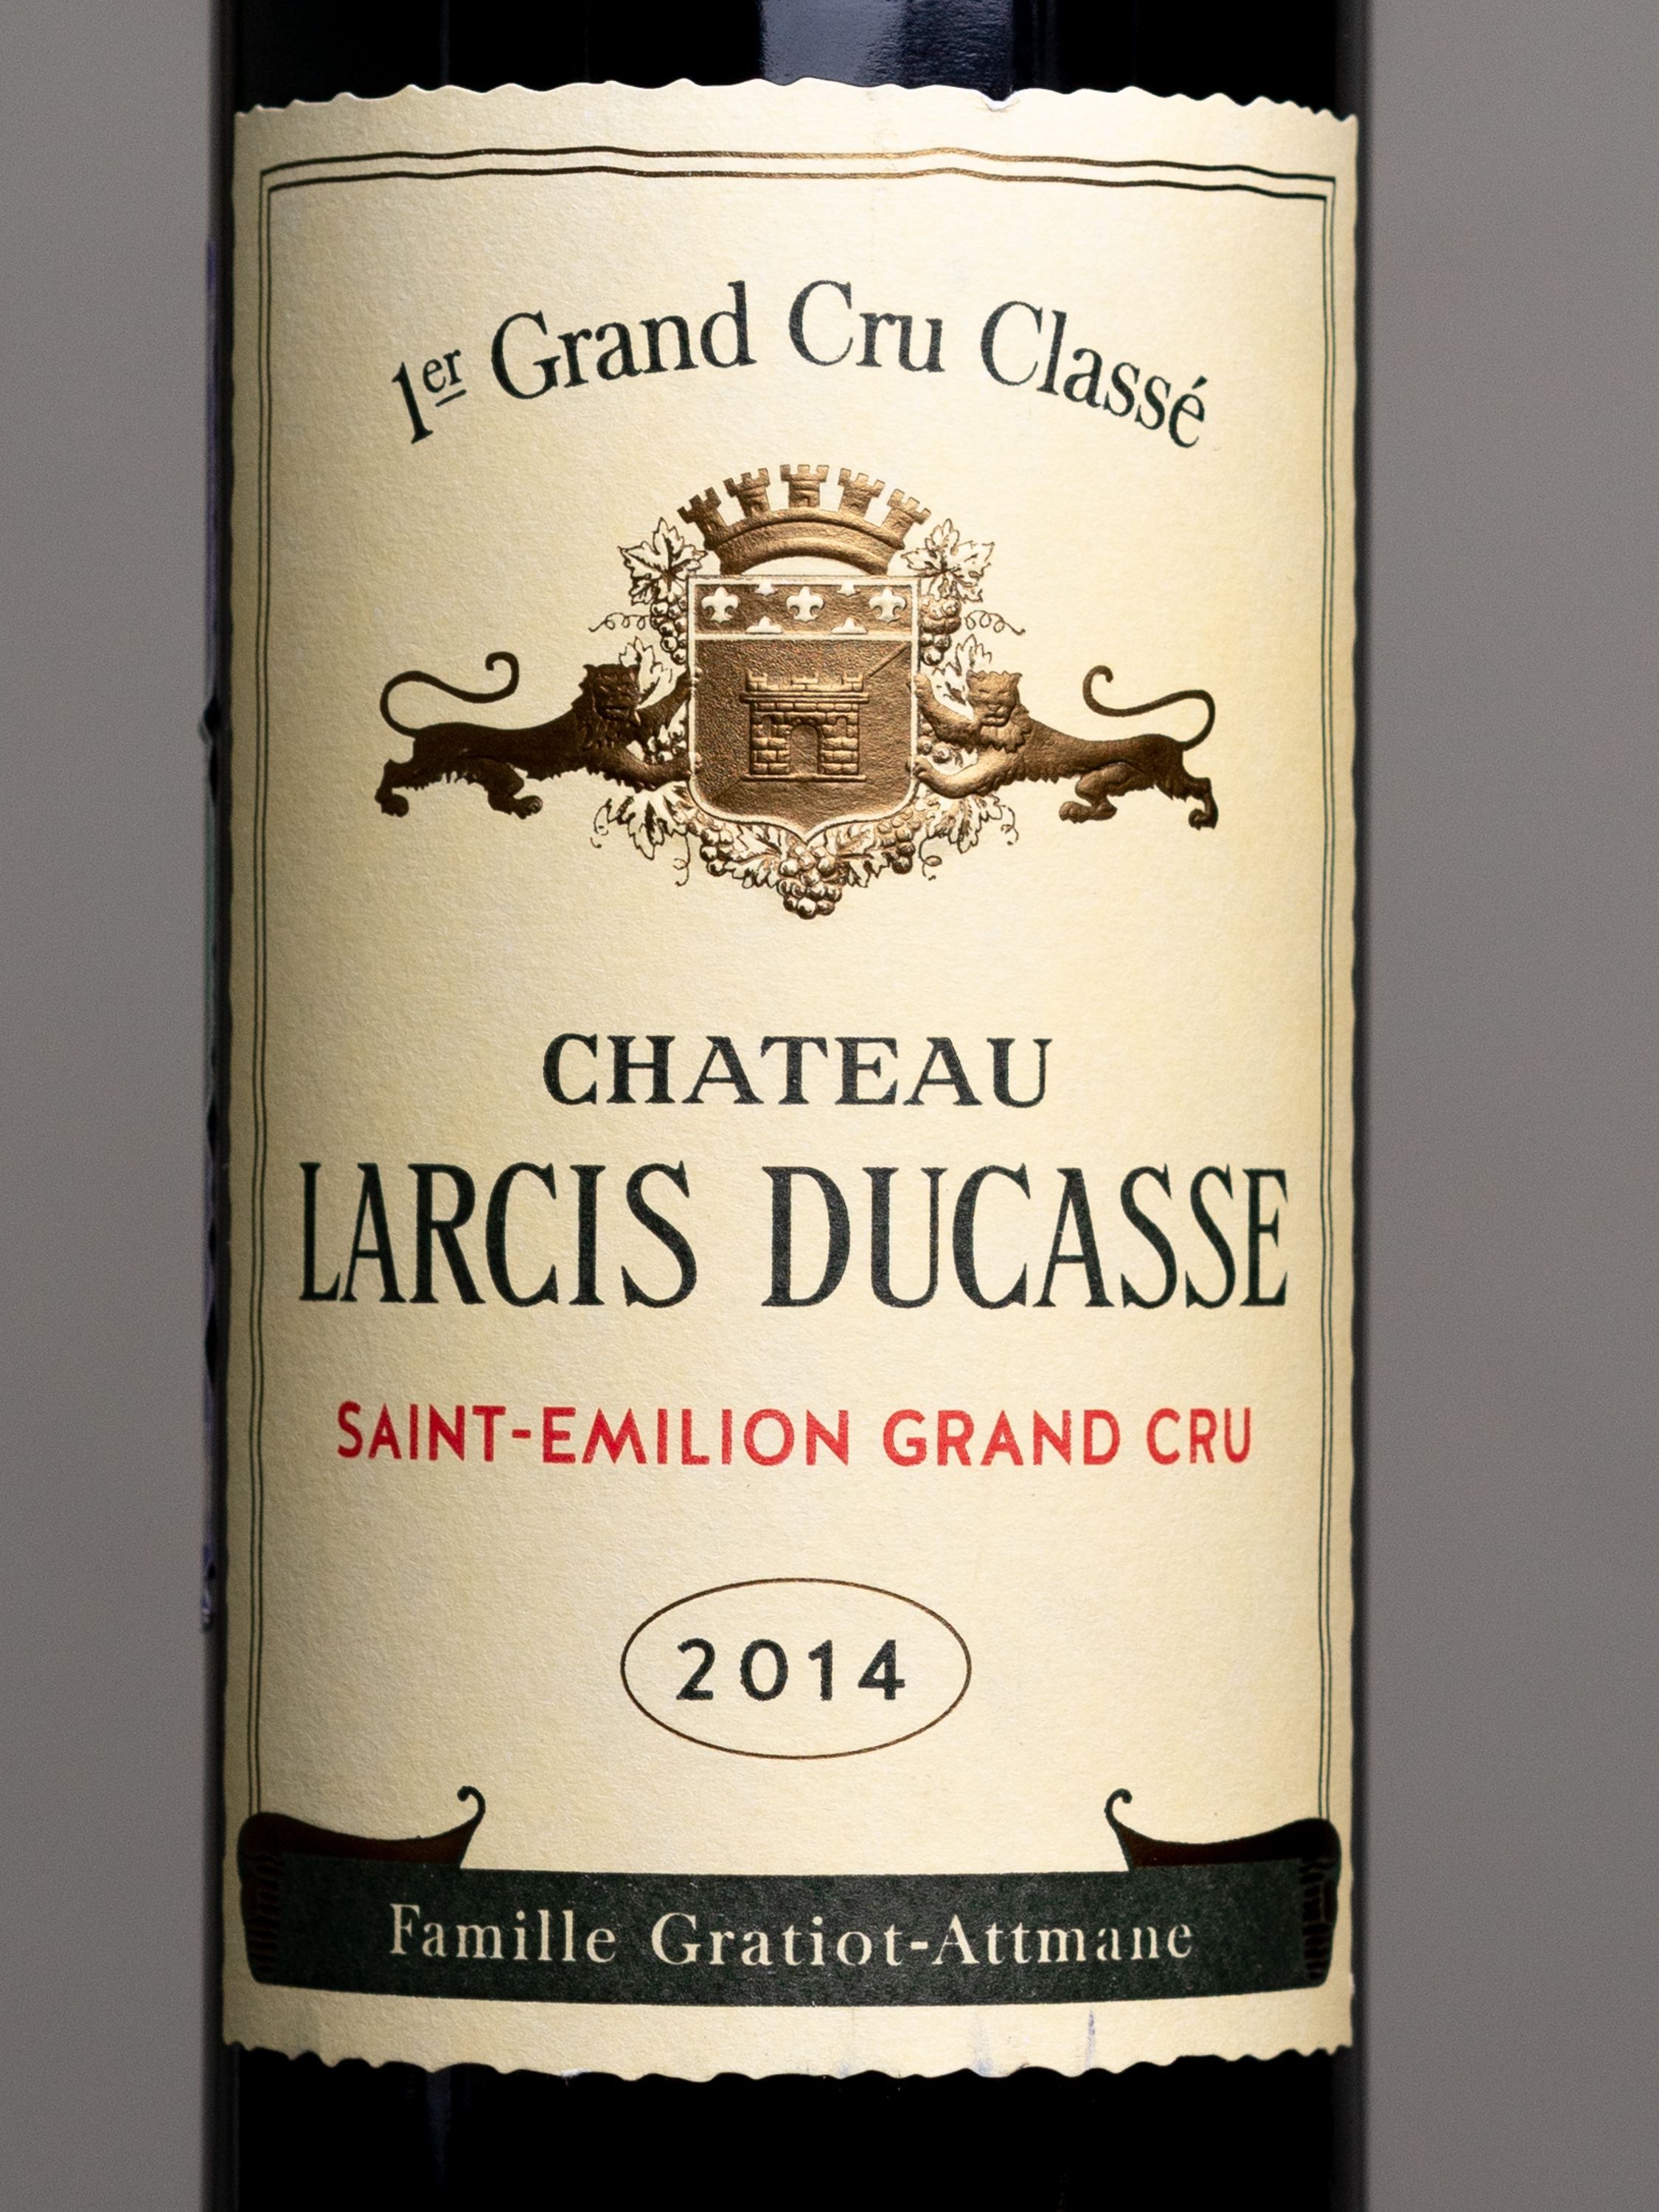 Вино Chateau Larcis Ducasse Grand Cru Classe Saint-Emillion / Шато Ларсис Дюкасс Гран Крю Классе Сент-Эмильон